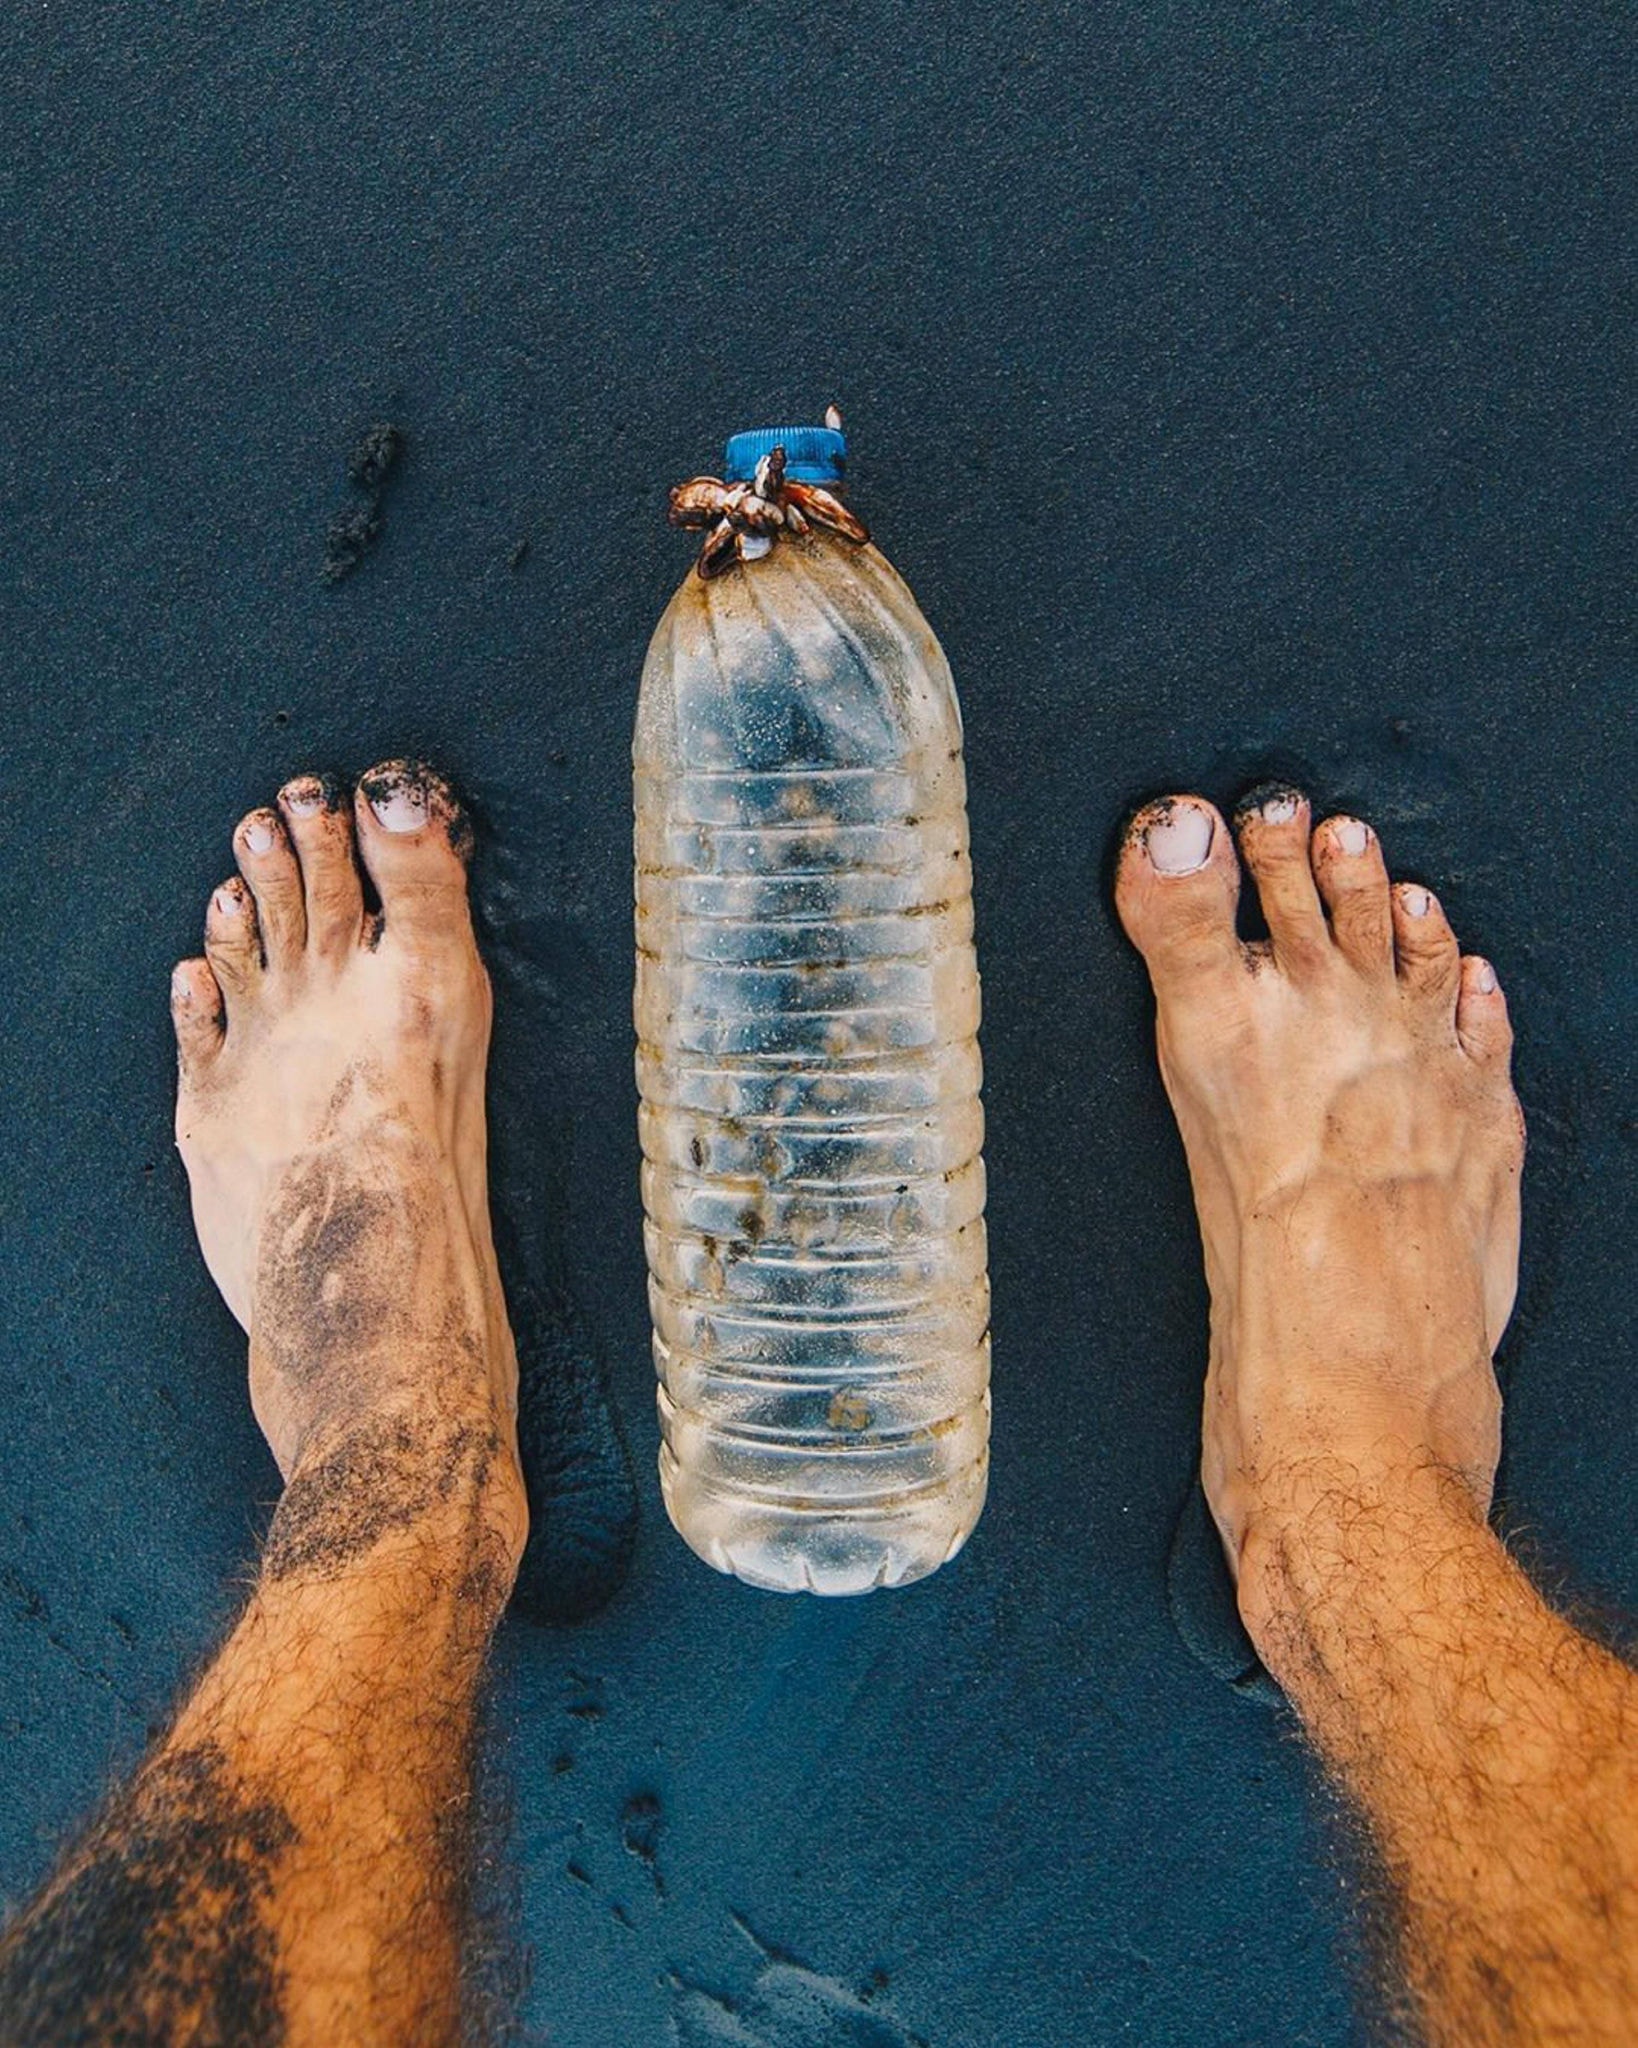 O fotógrafo brasileiro Raul Aragão postou fotos em seu Instagram do lixo que ele recolhe e fotografa em Bali, na Indonésia